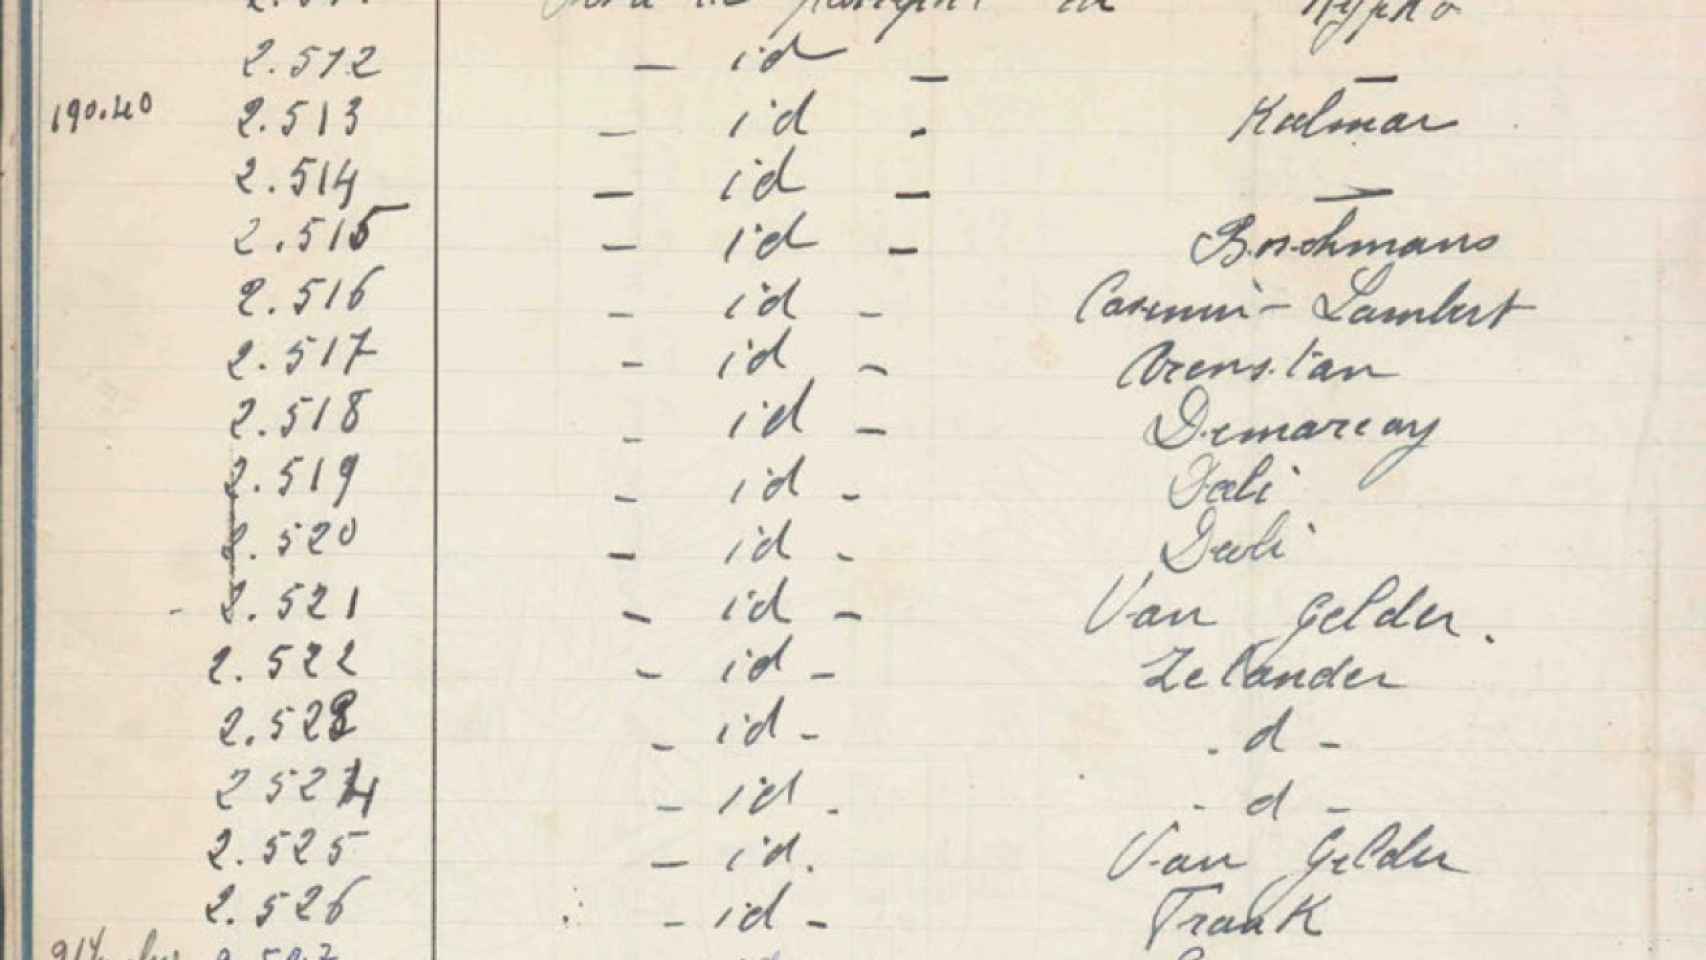 El apellido de Dalí en el registro de visados del 20 de junio, 1940.